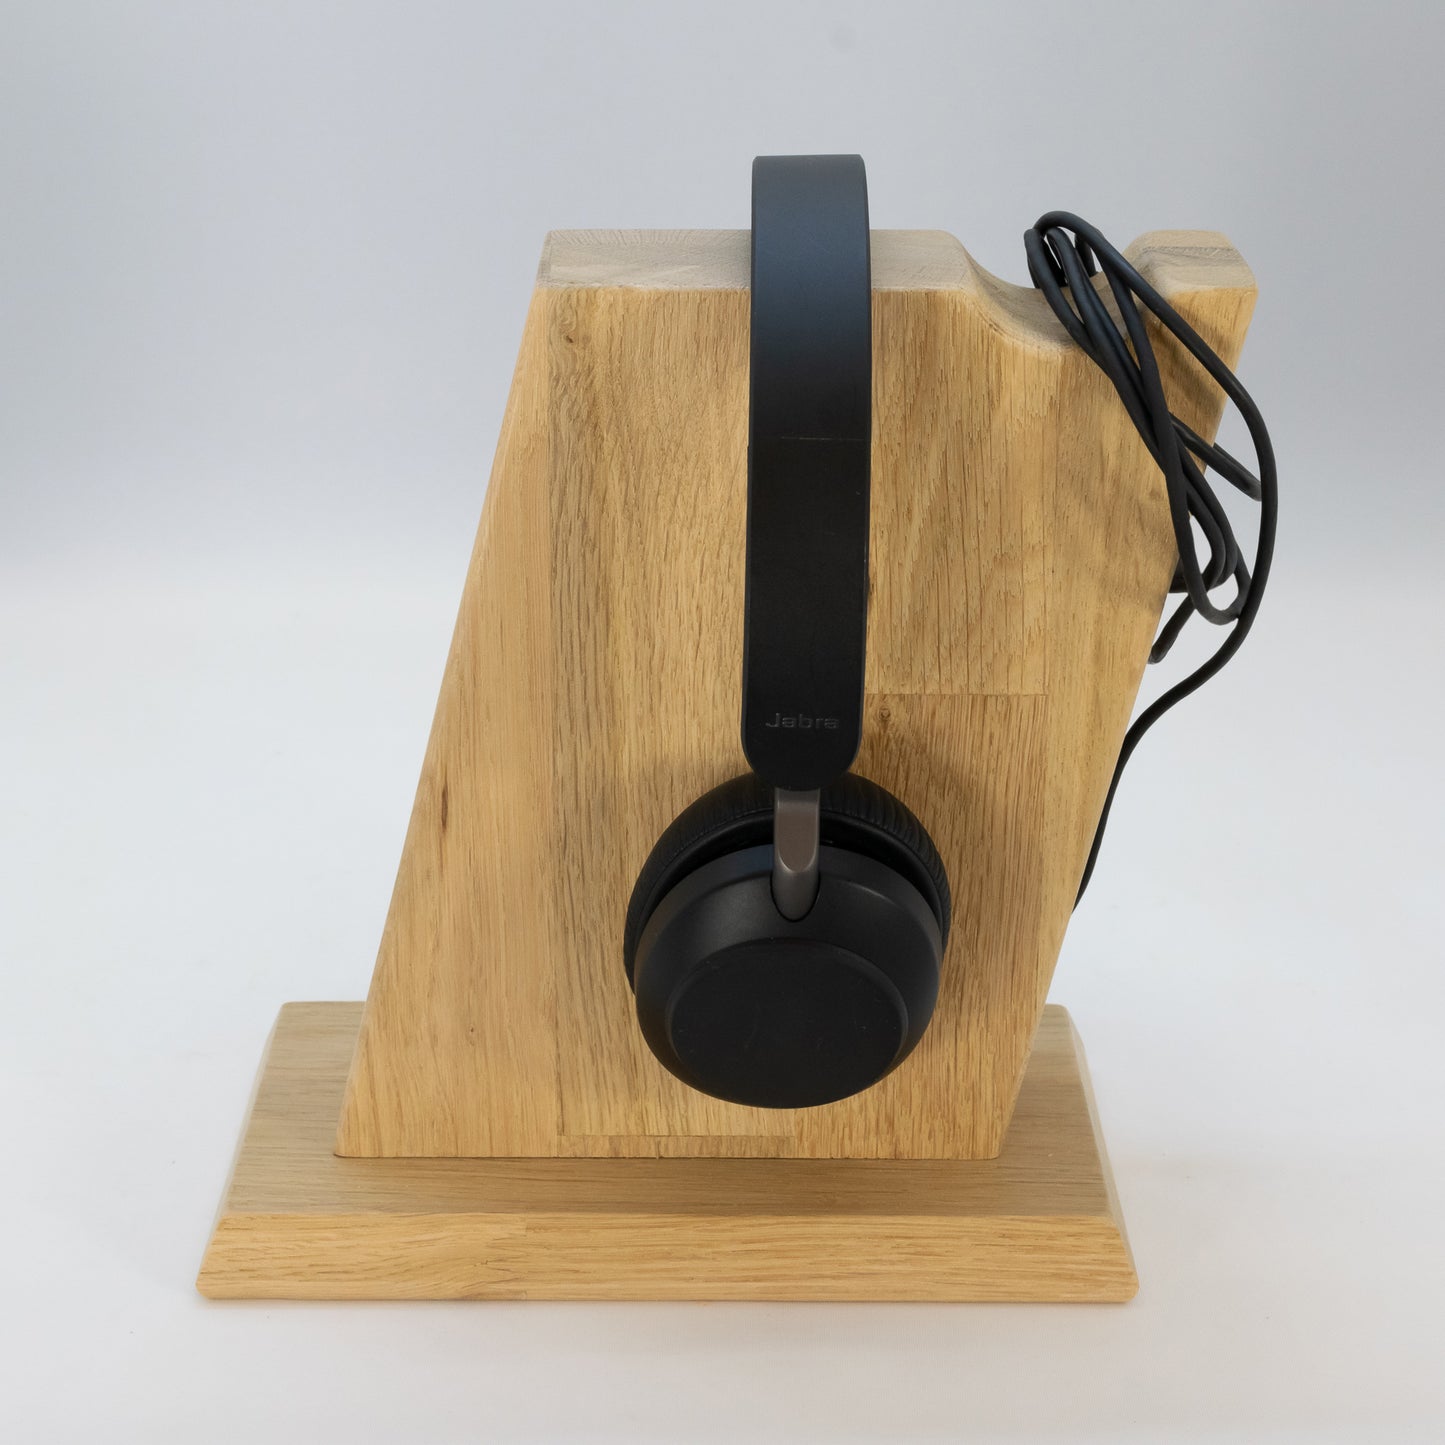 Kopfhörerständer / Kopfhörerhalter "Vintage" aus Massivholz inklusive Kabelhalterung. phonotastisch